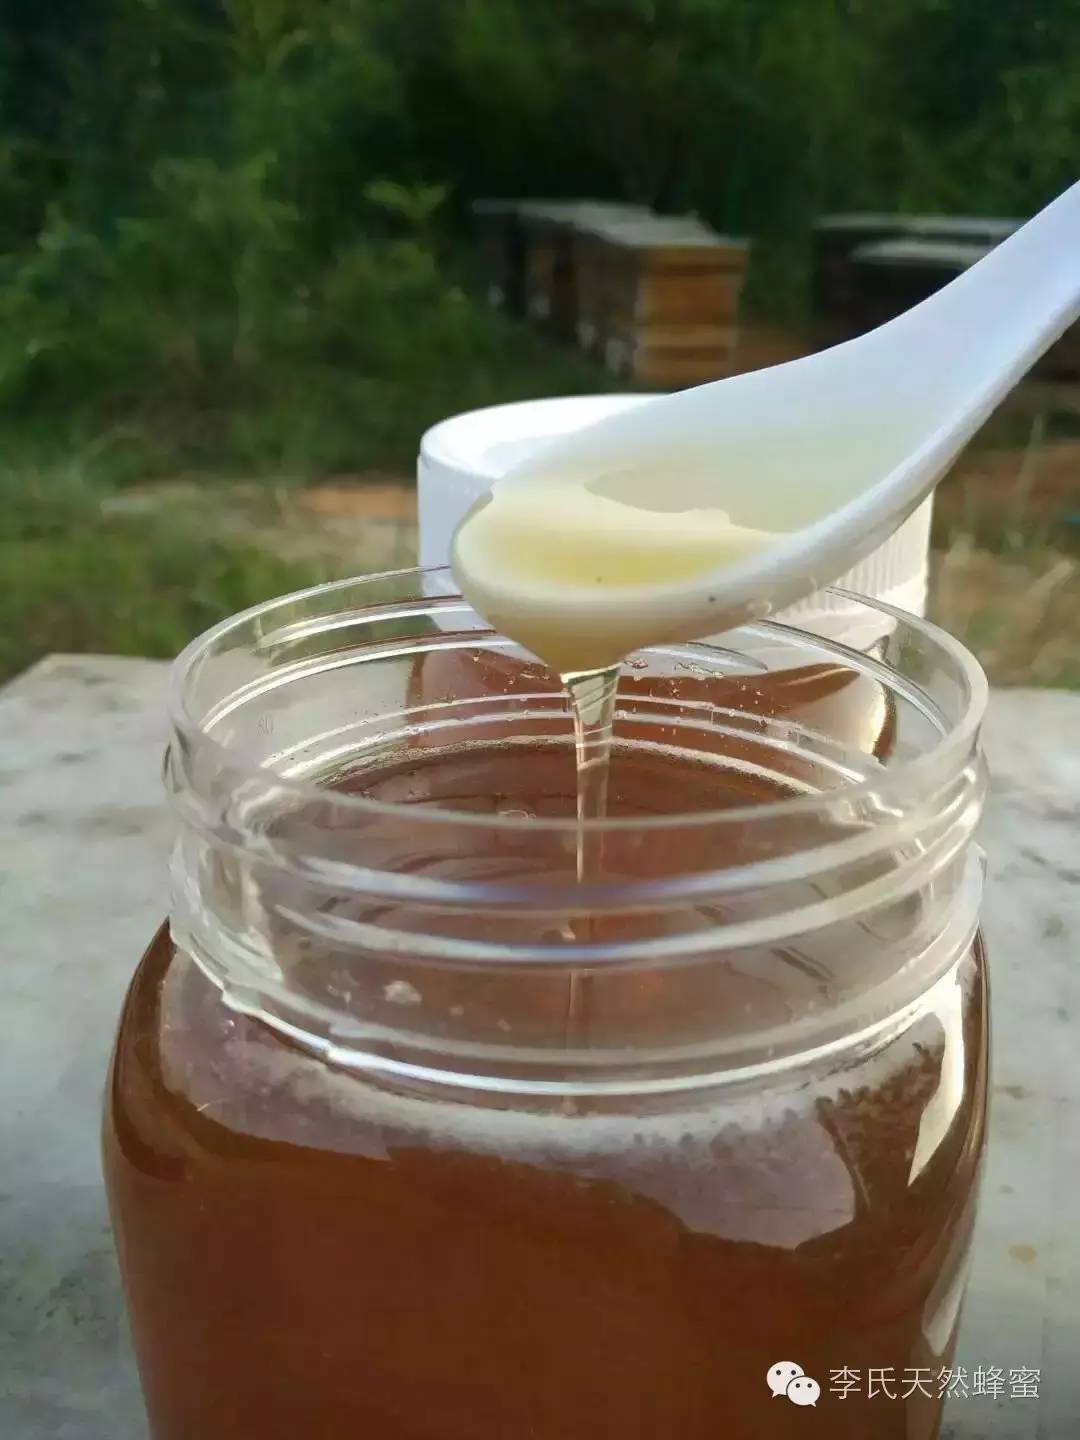 怎么买蜂蜜 蜂蜜做面膜的方法 唐家河野生蜂蜜 黄瓜蜂蜜面膜怎么做 哪能买到真蜂蜜